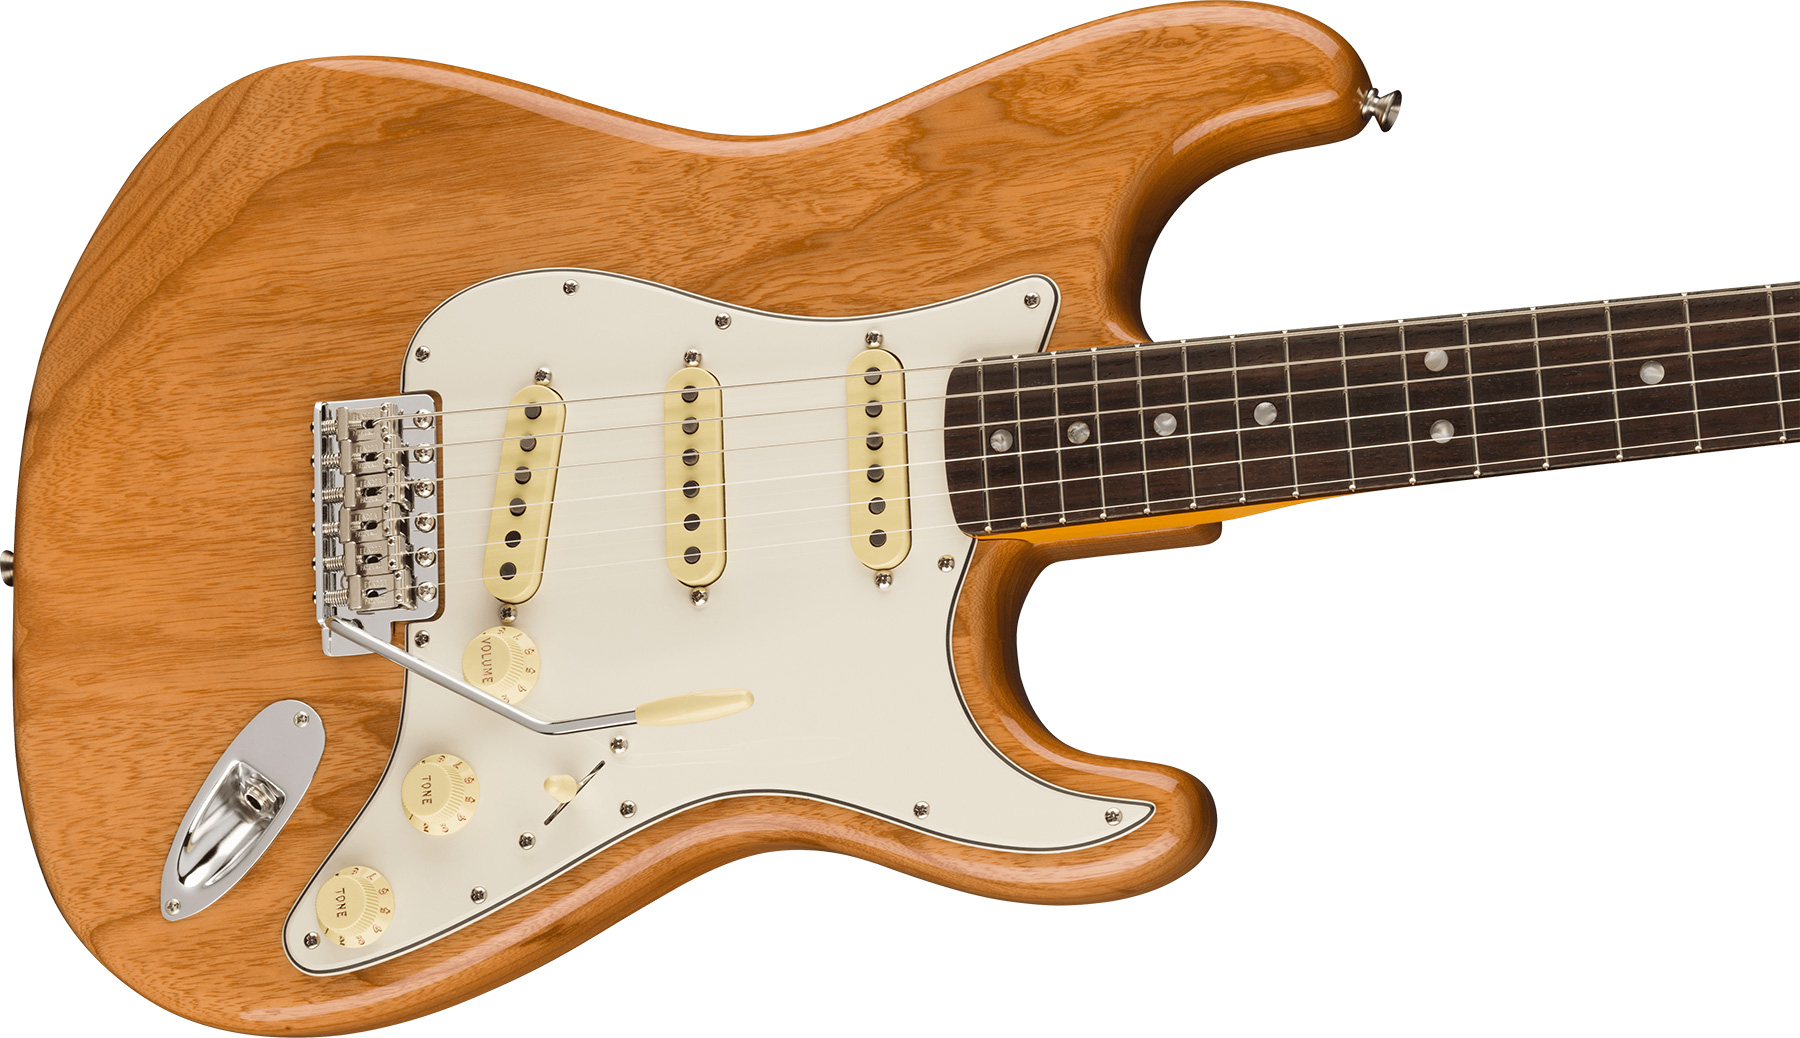 Fender Strat 1973 American Vintage Ii Usa 3s Trem Rw - Aged Natural - Guitare Électrique Forme Str - Variation 2